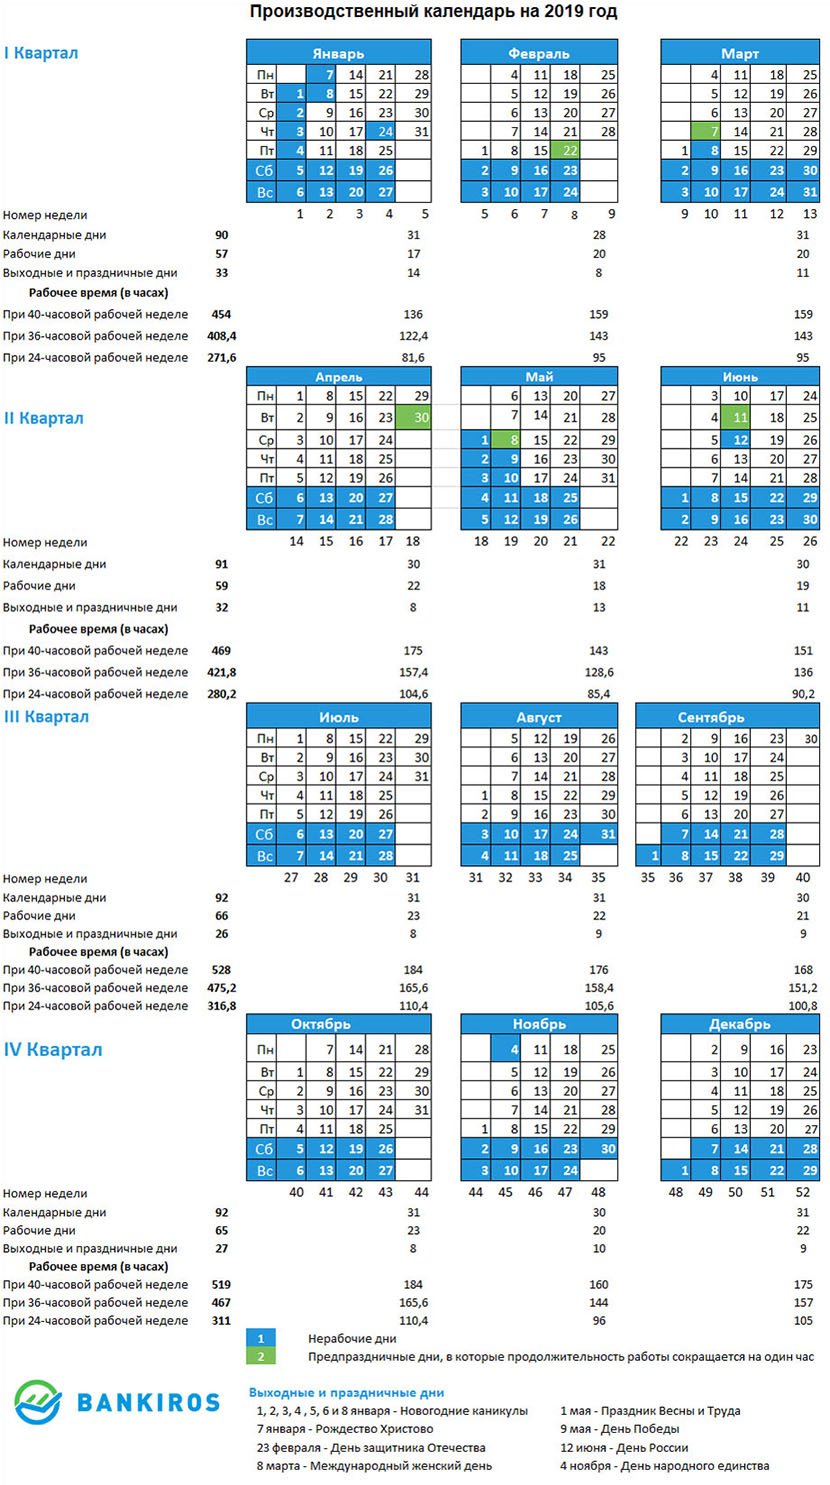 Производственный календарь 2019 с выходными и переносами утвержденный  правительством